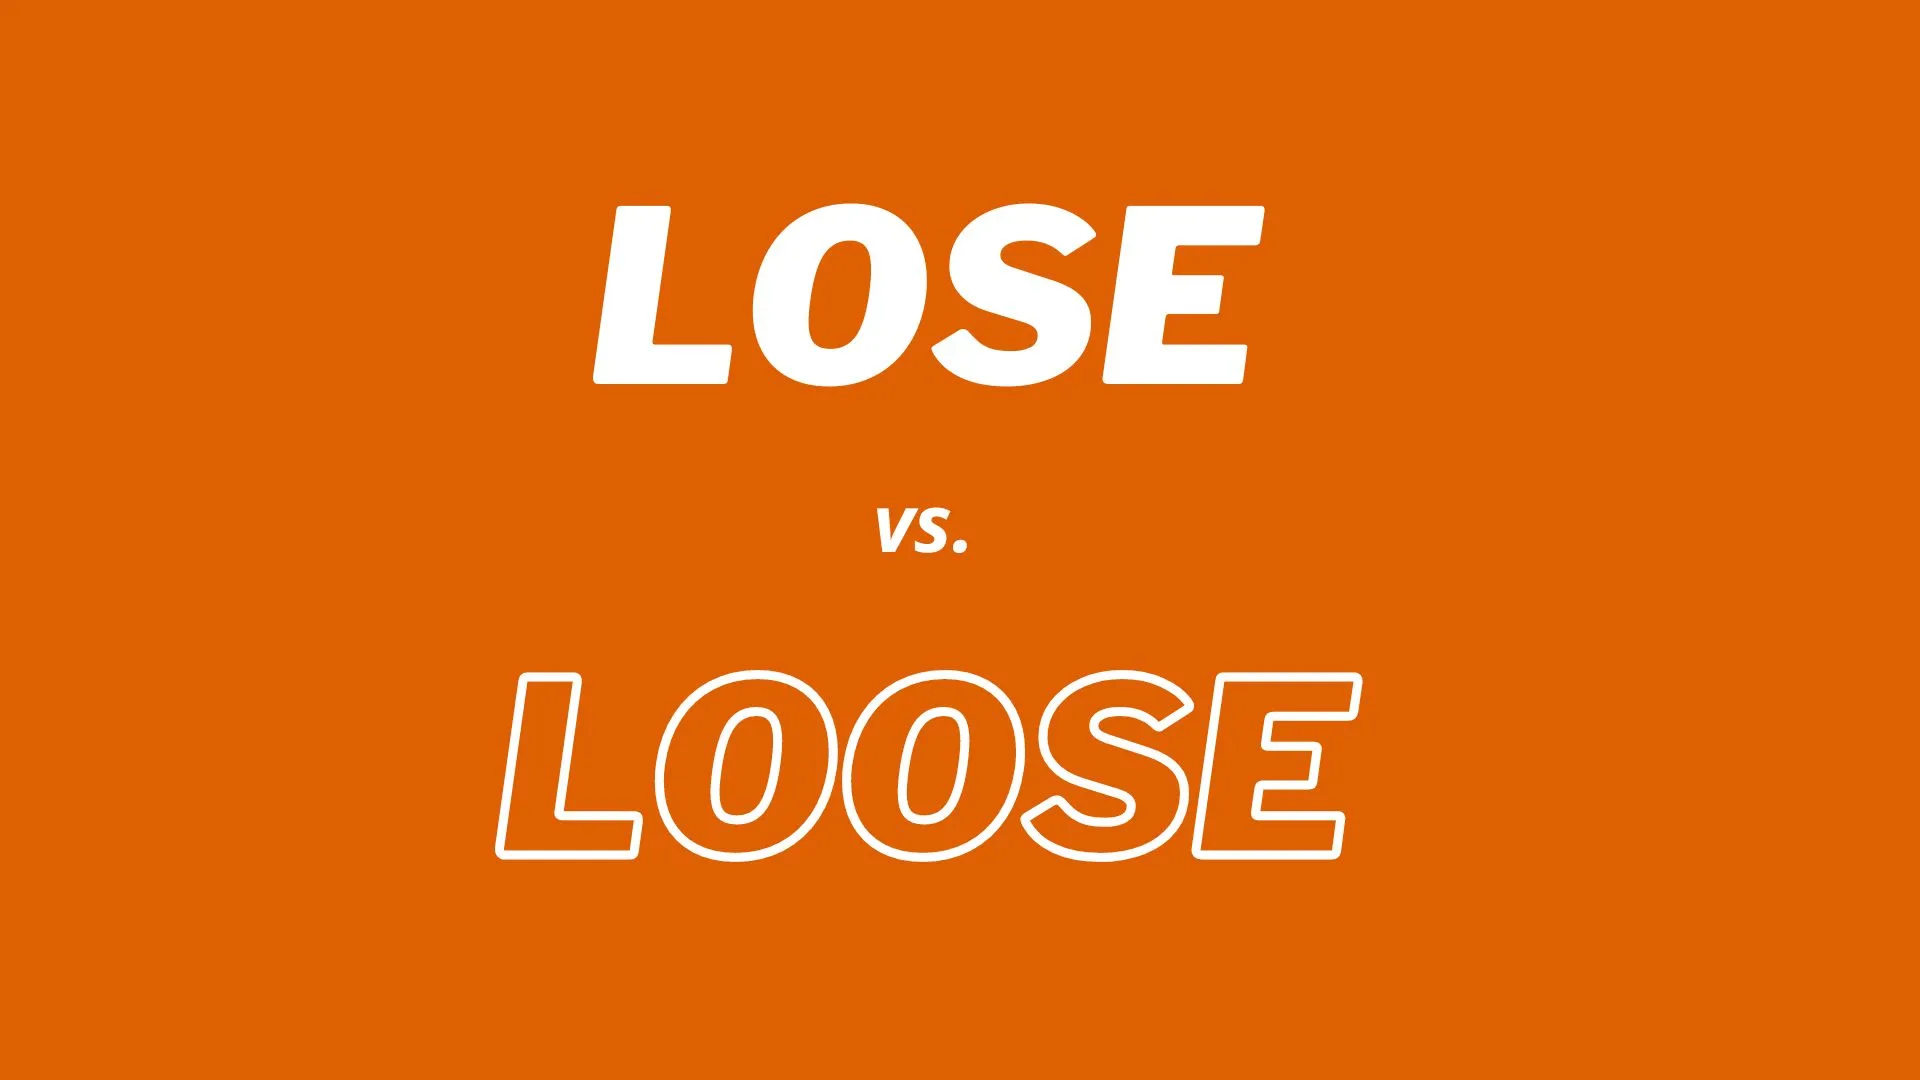 Comparação visual e definições das palavras “lose” e "loose".